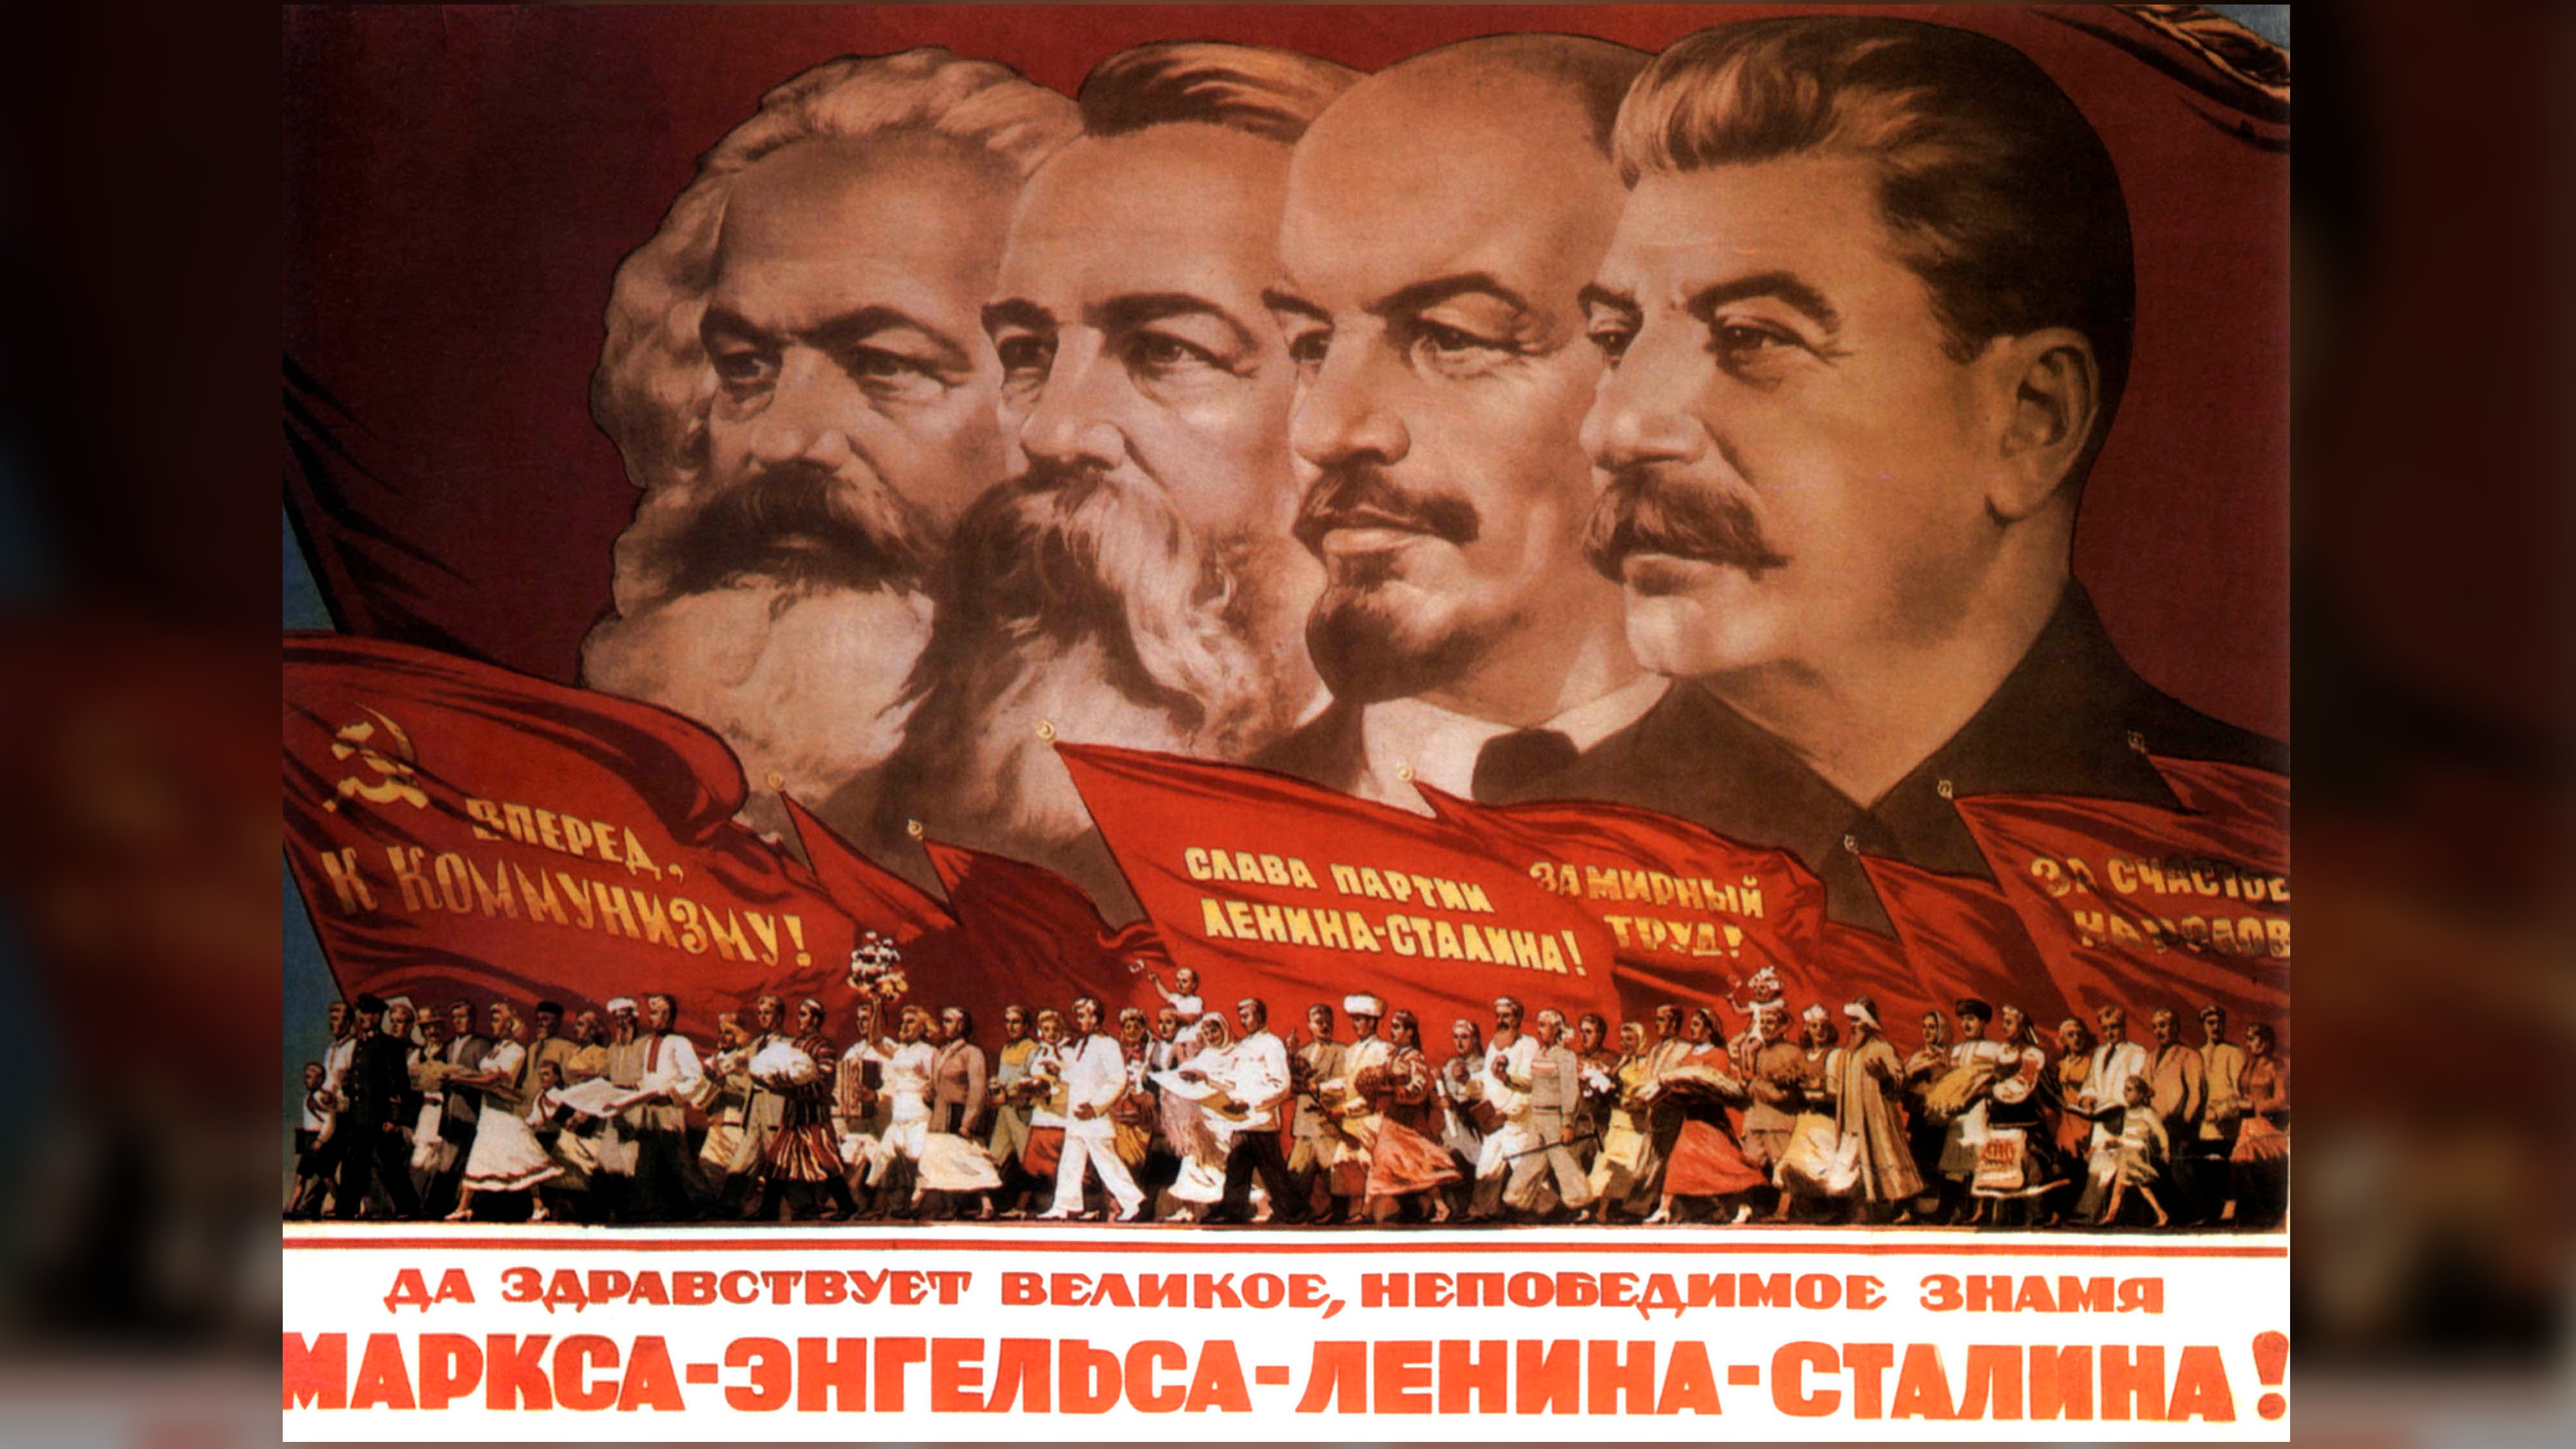 Сталин классовая борьба. Знамя Маркса Энгельса Ленина. Маркс Энгельс Ленин Сталин плакат. Сталин плакат.